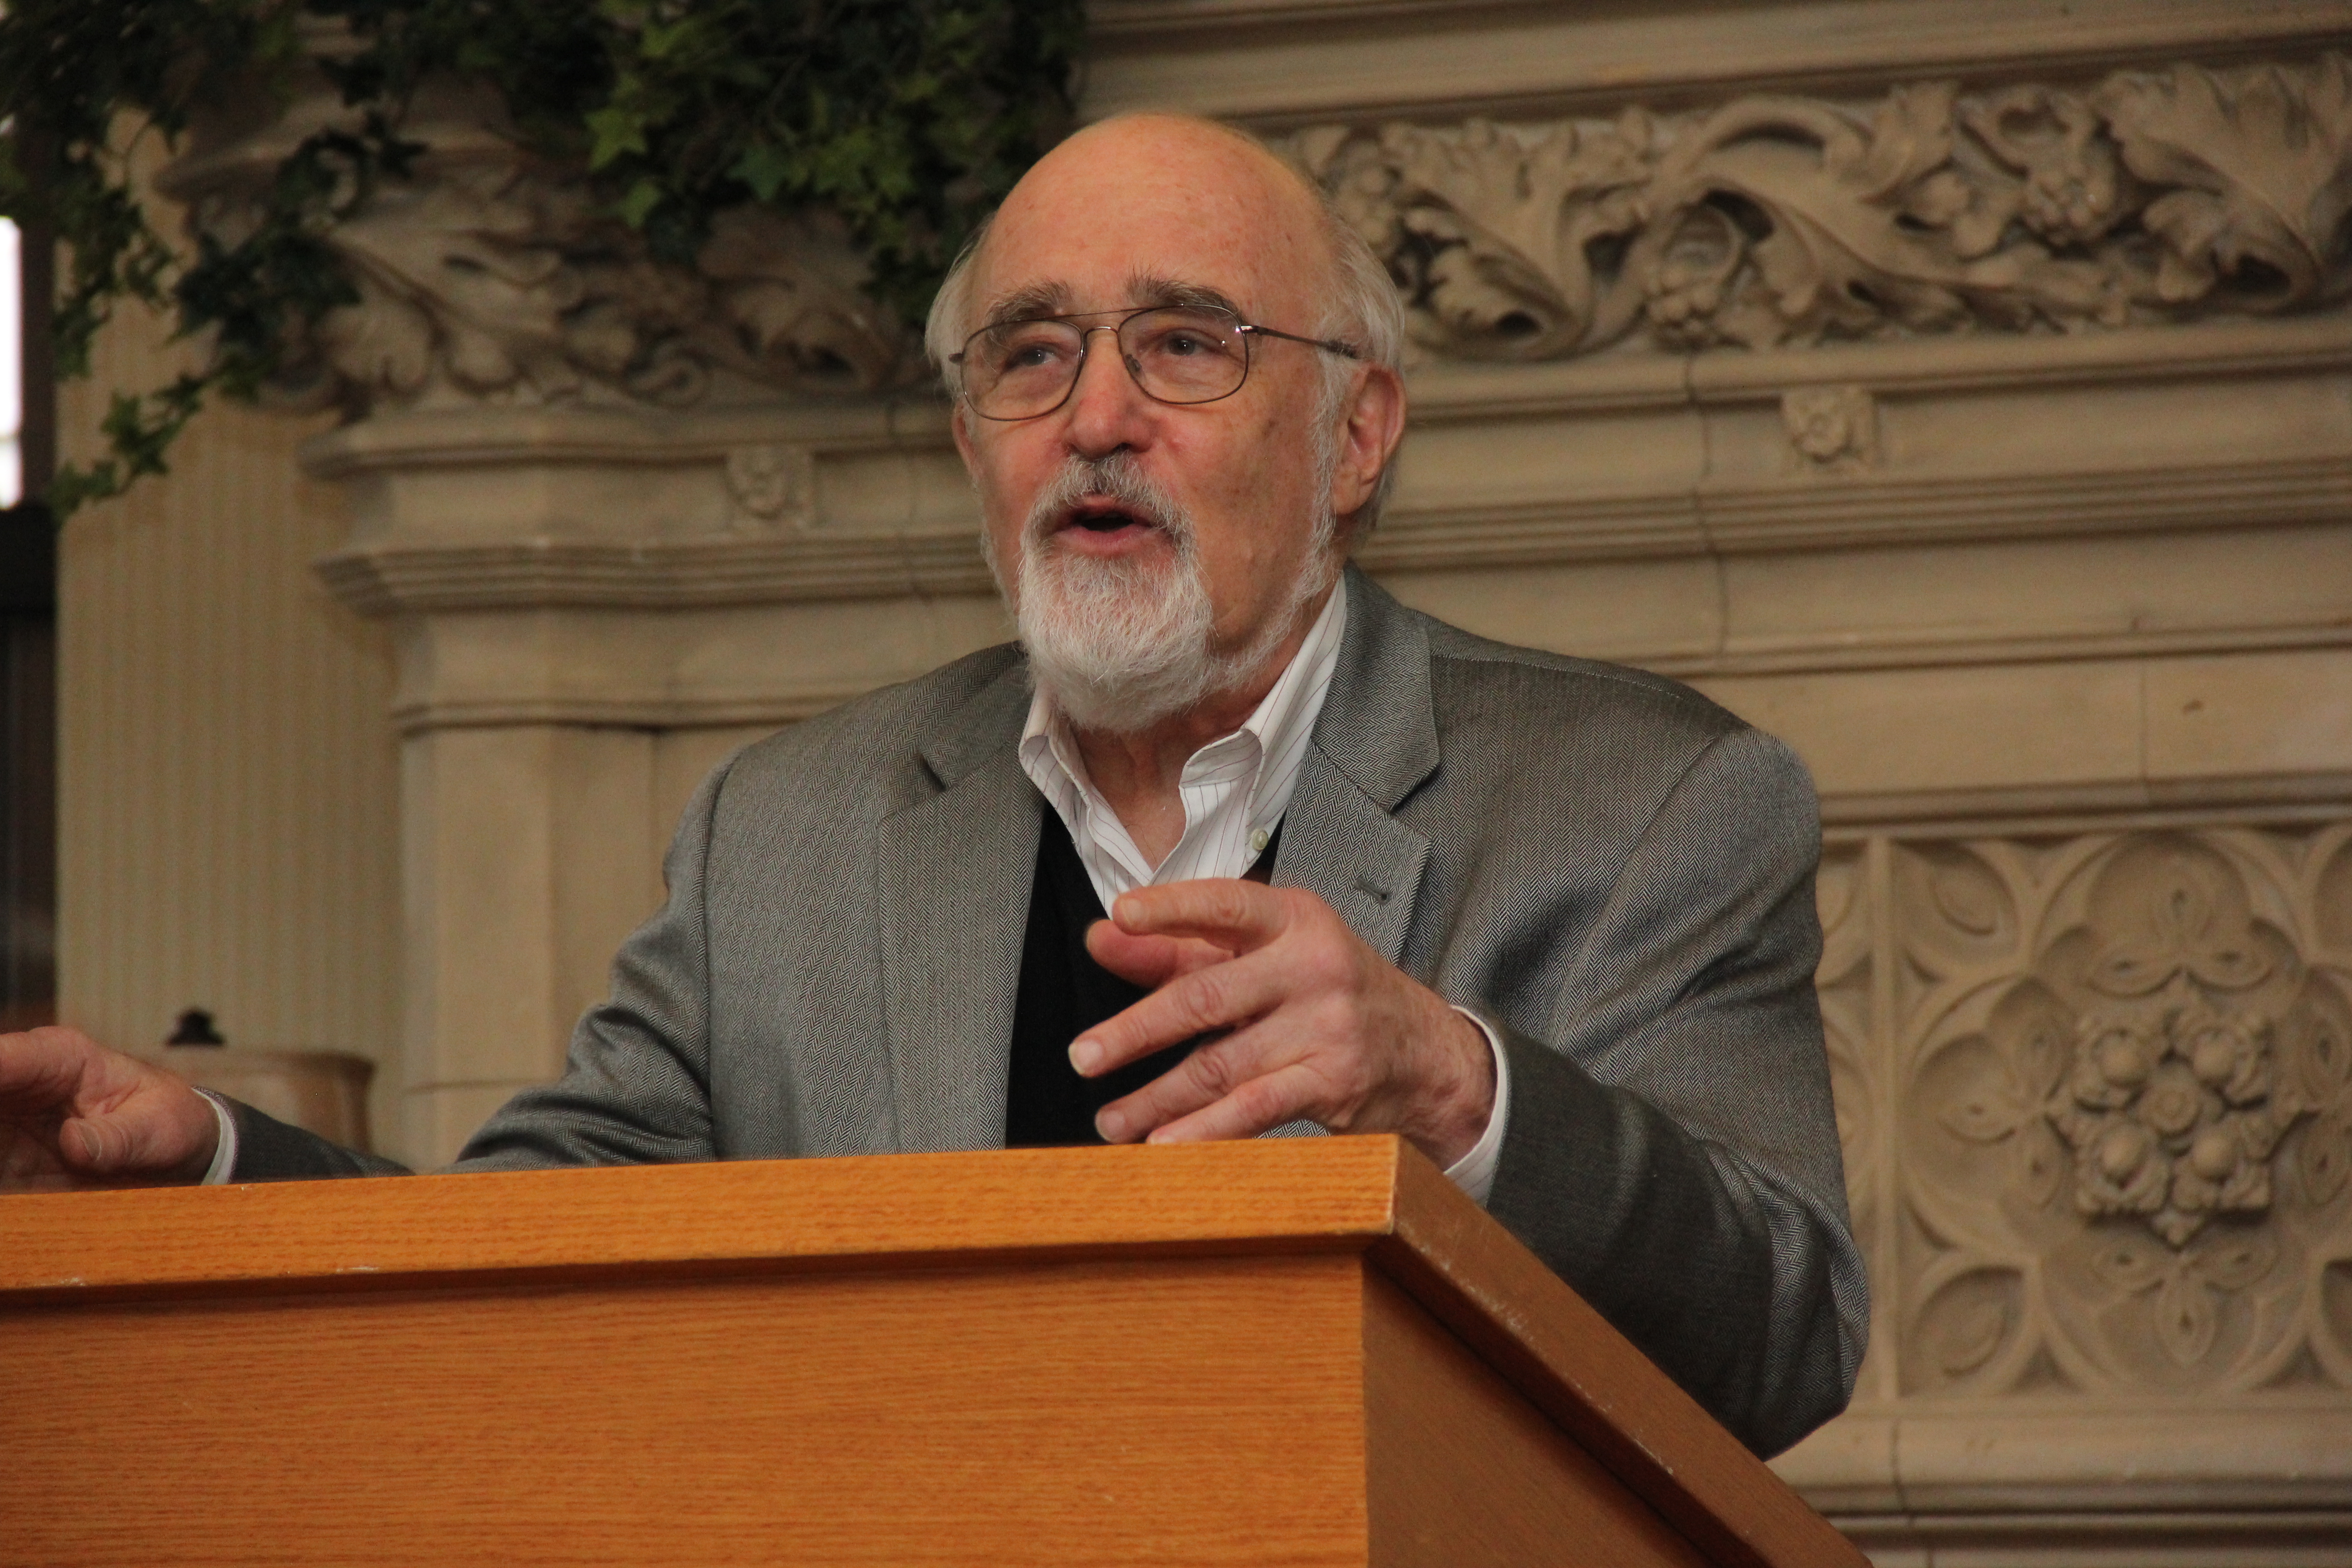 Dr. Bernard Goldstein